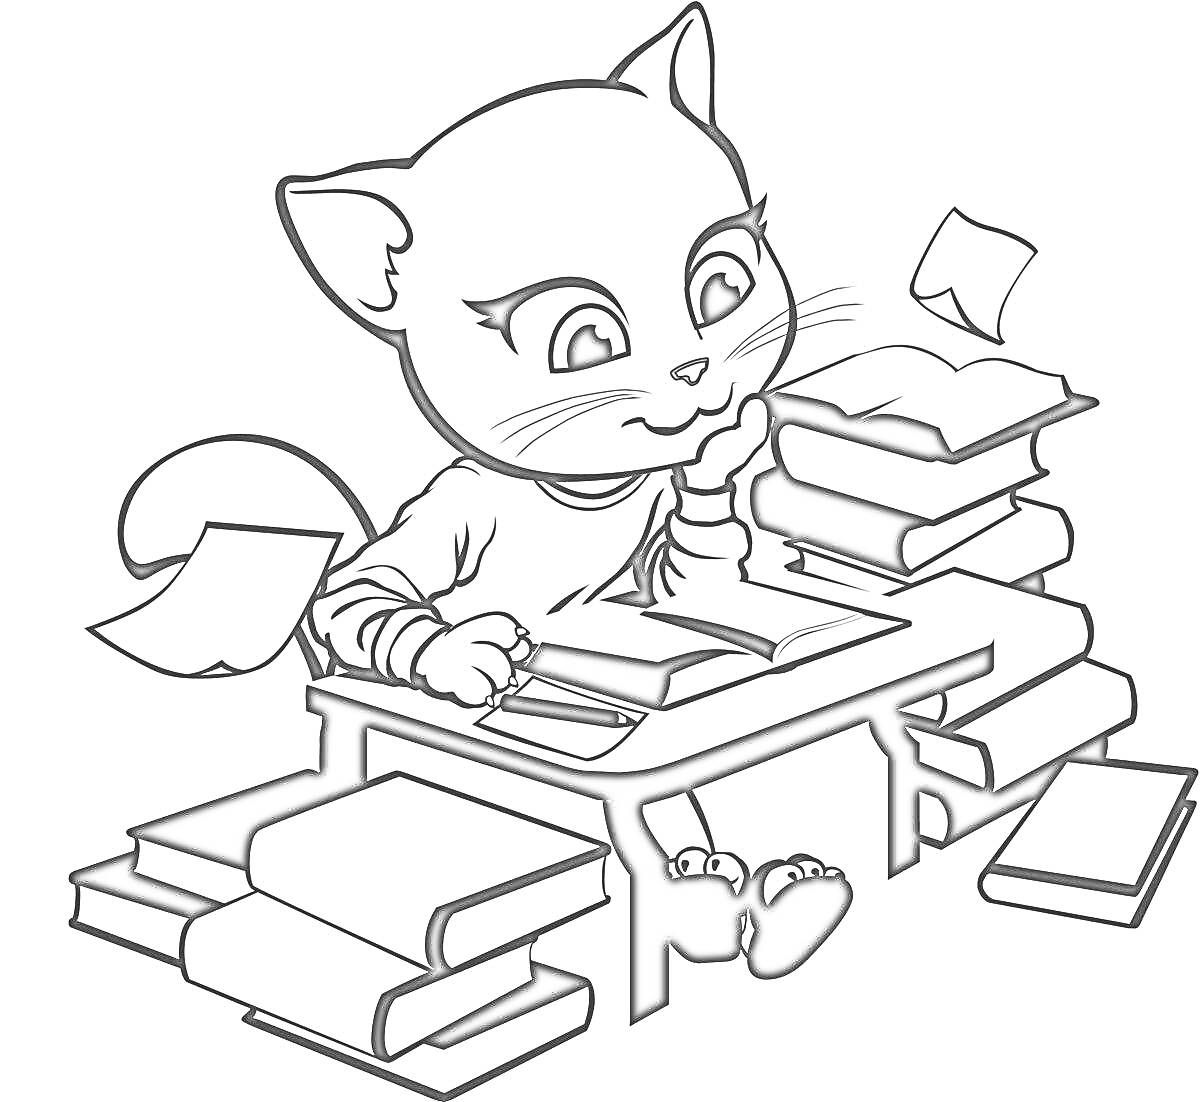 Раскраска Говорящий Том за письменным столом с книгами и бумагами